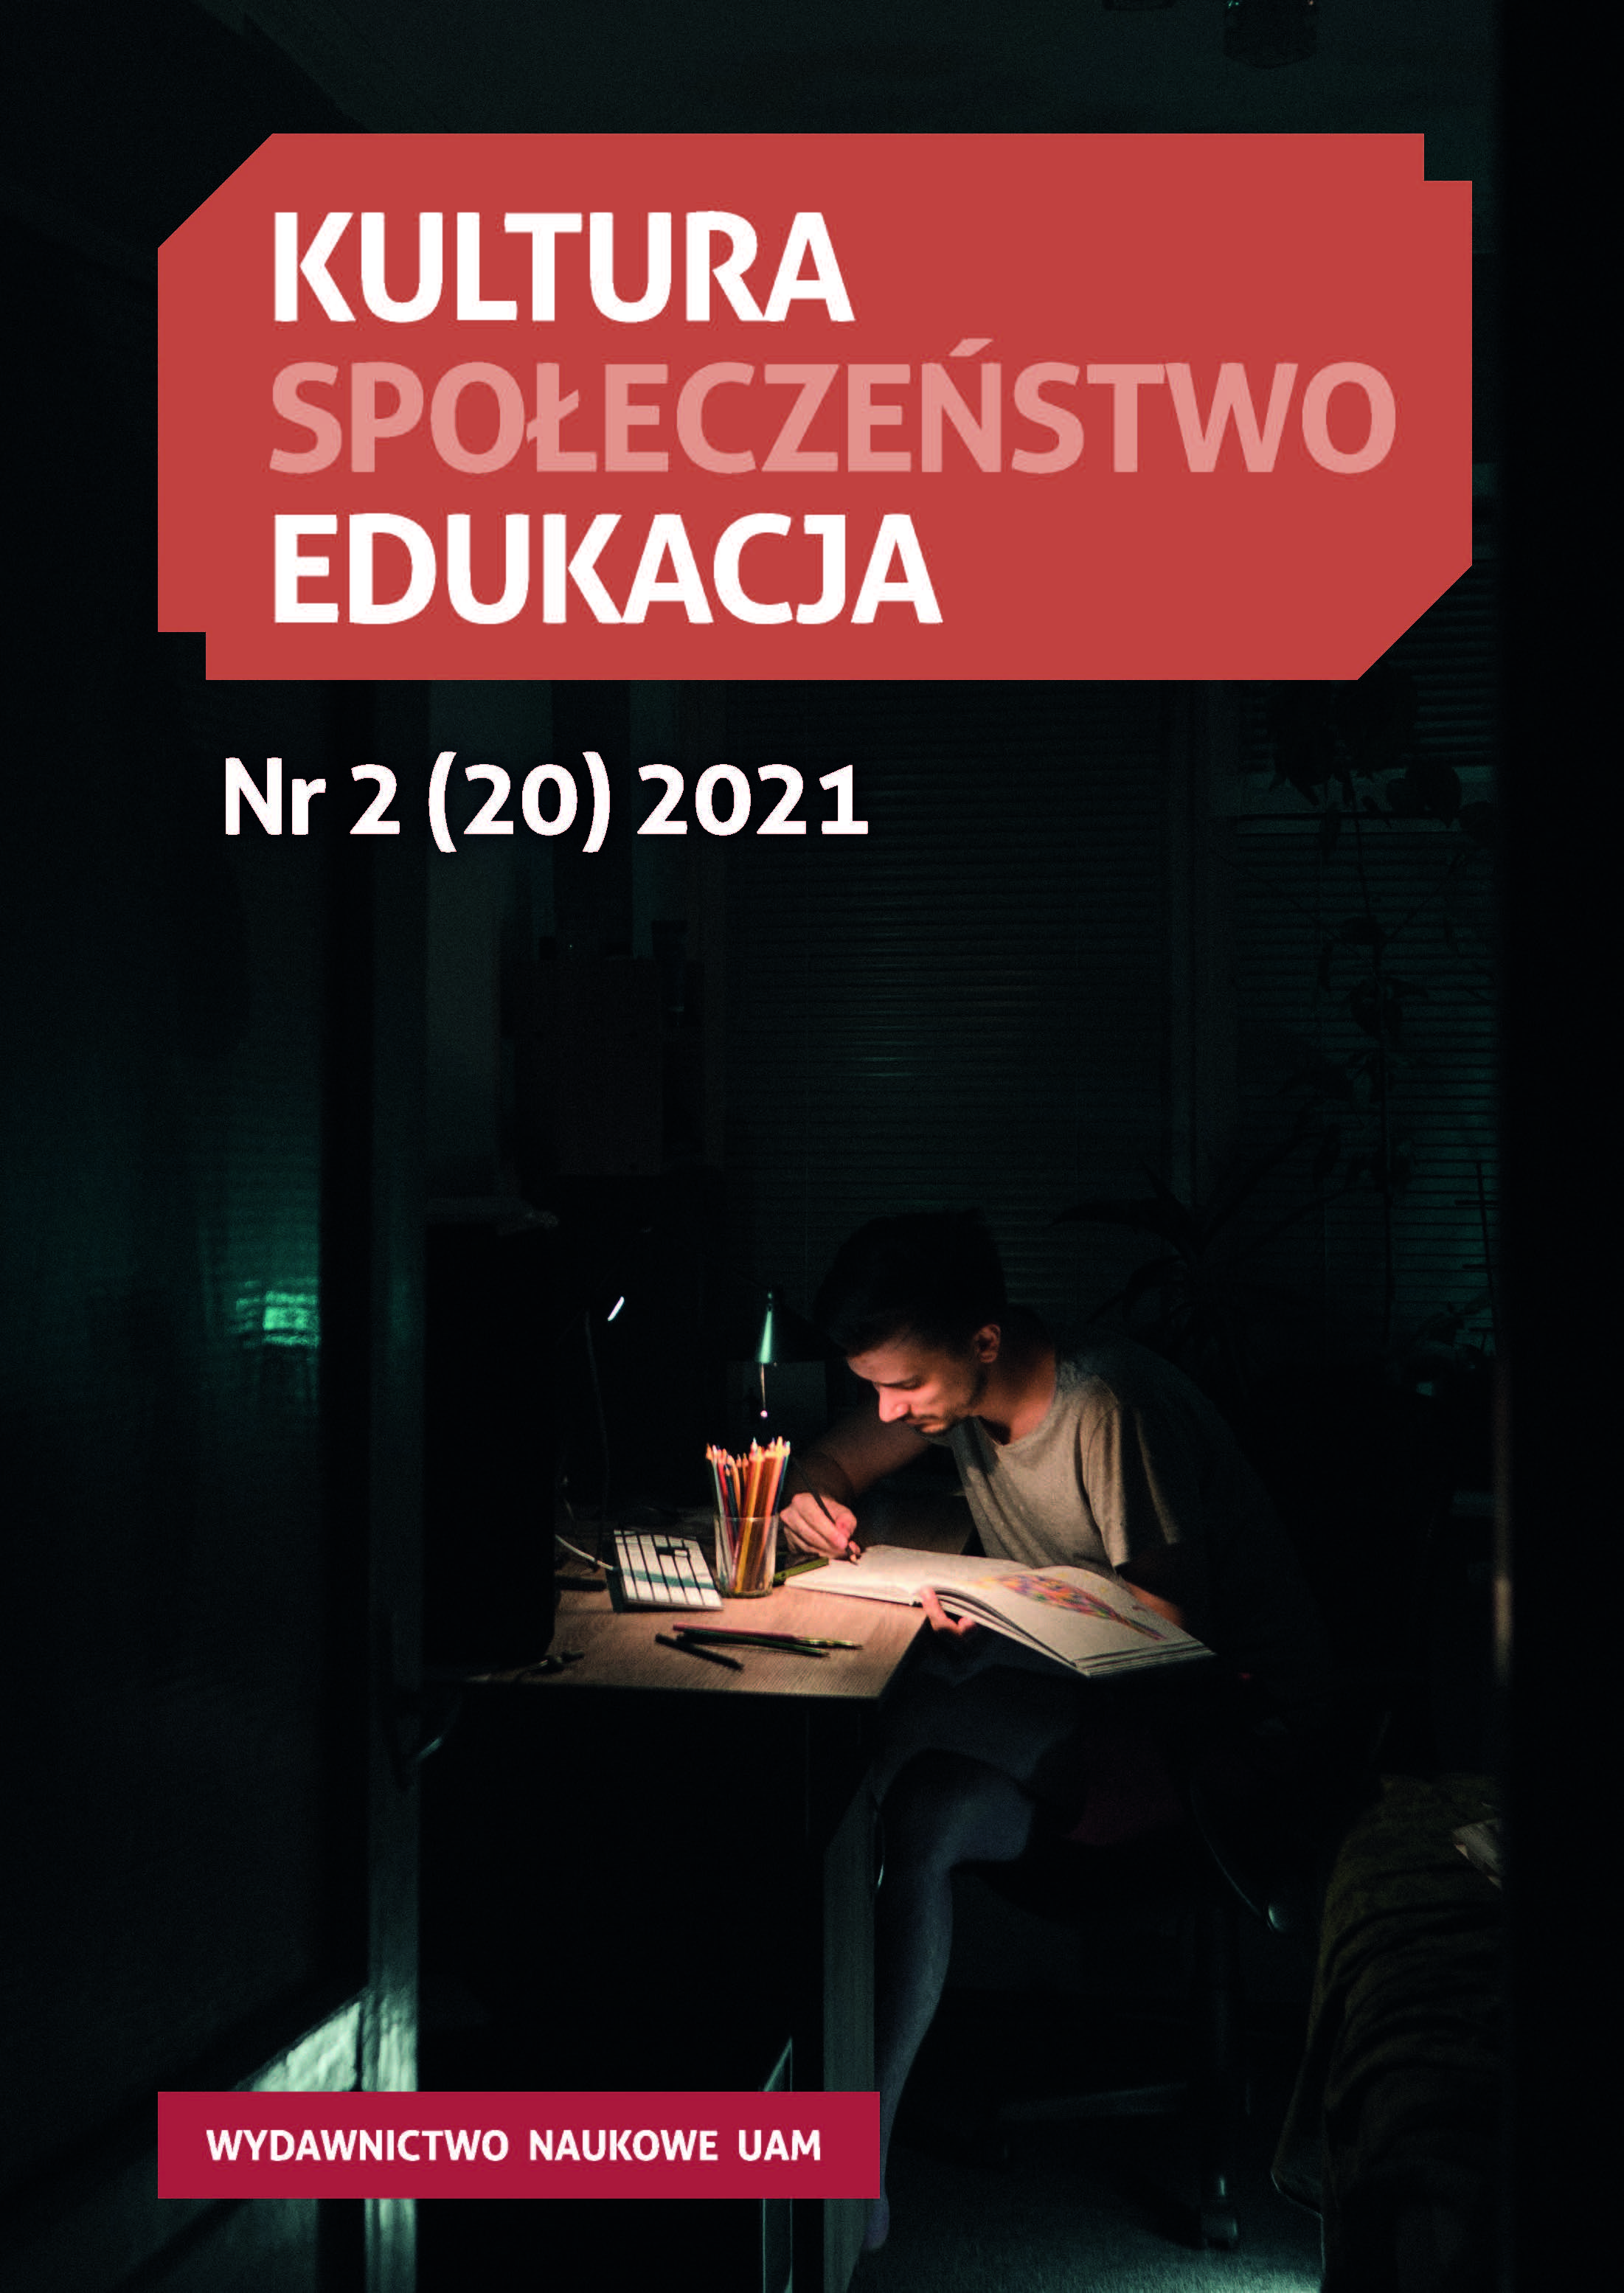 Wychowanie dziecka w polskiej kulturze w warunkach emigracji na przykładzie polskich szkół sobotnich w Londynie